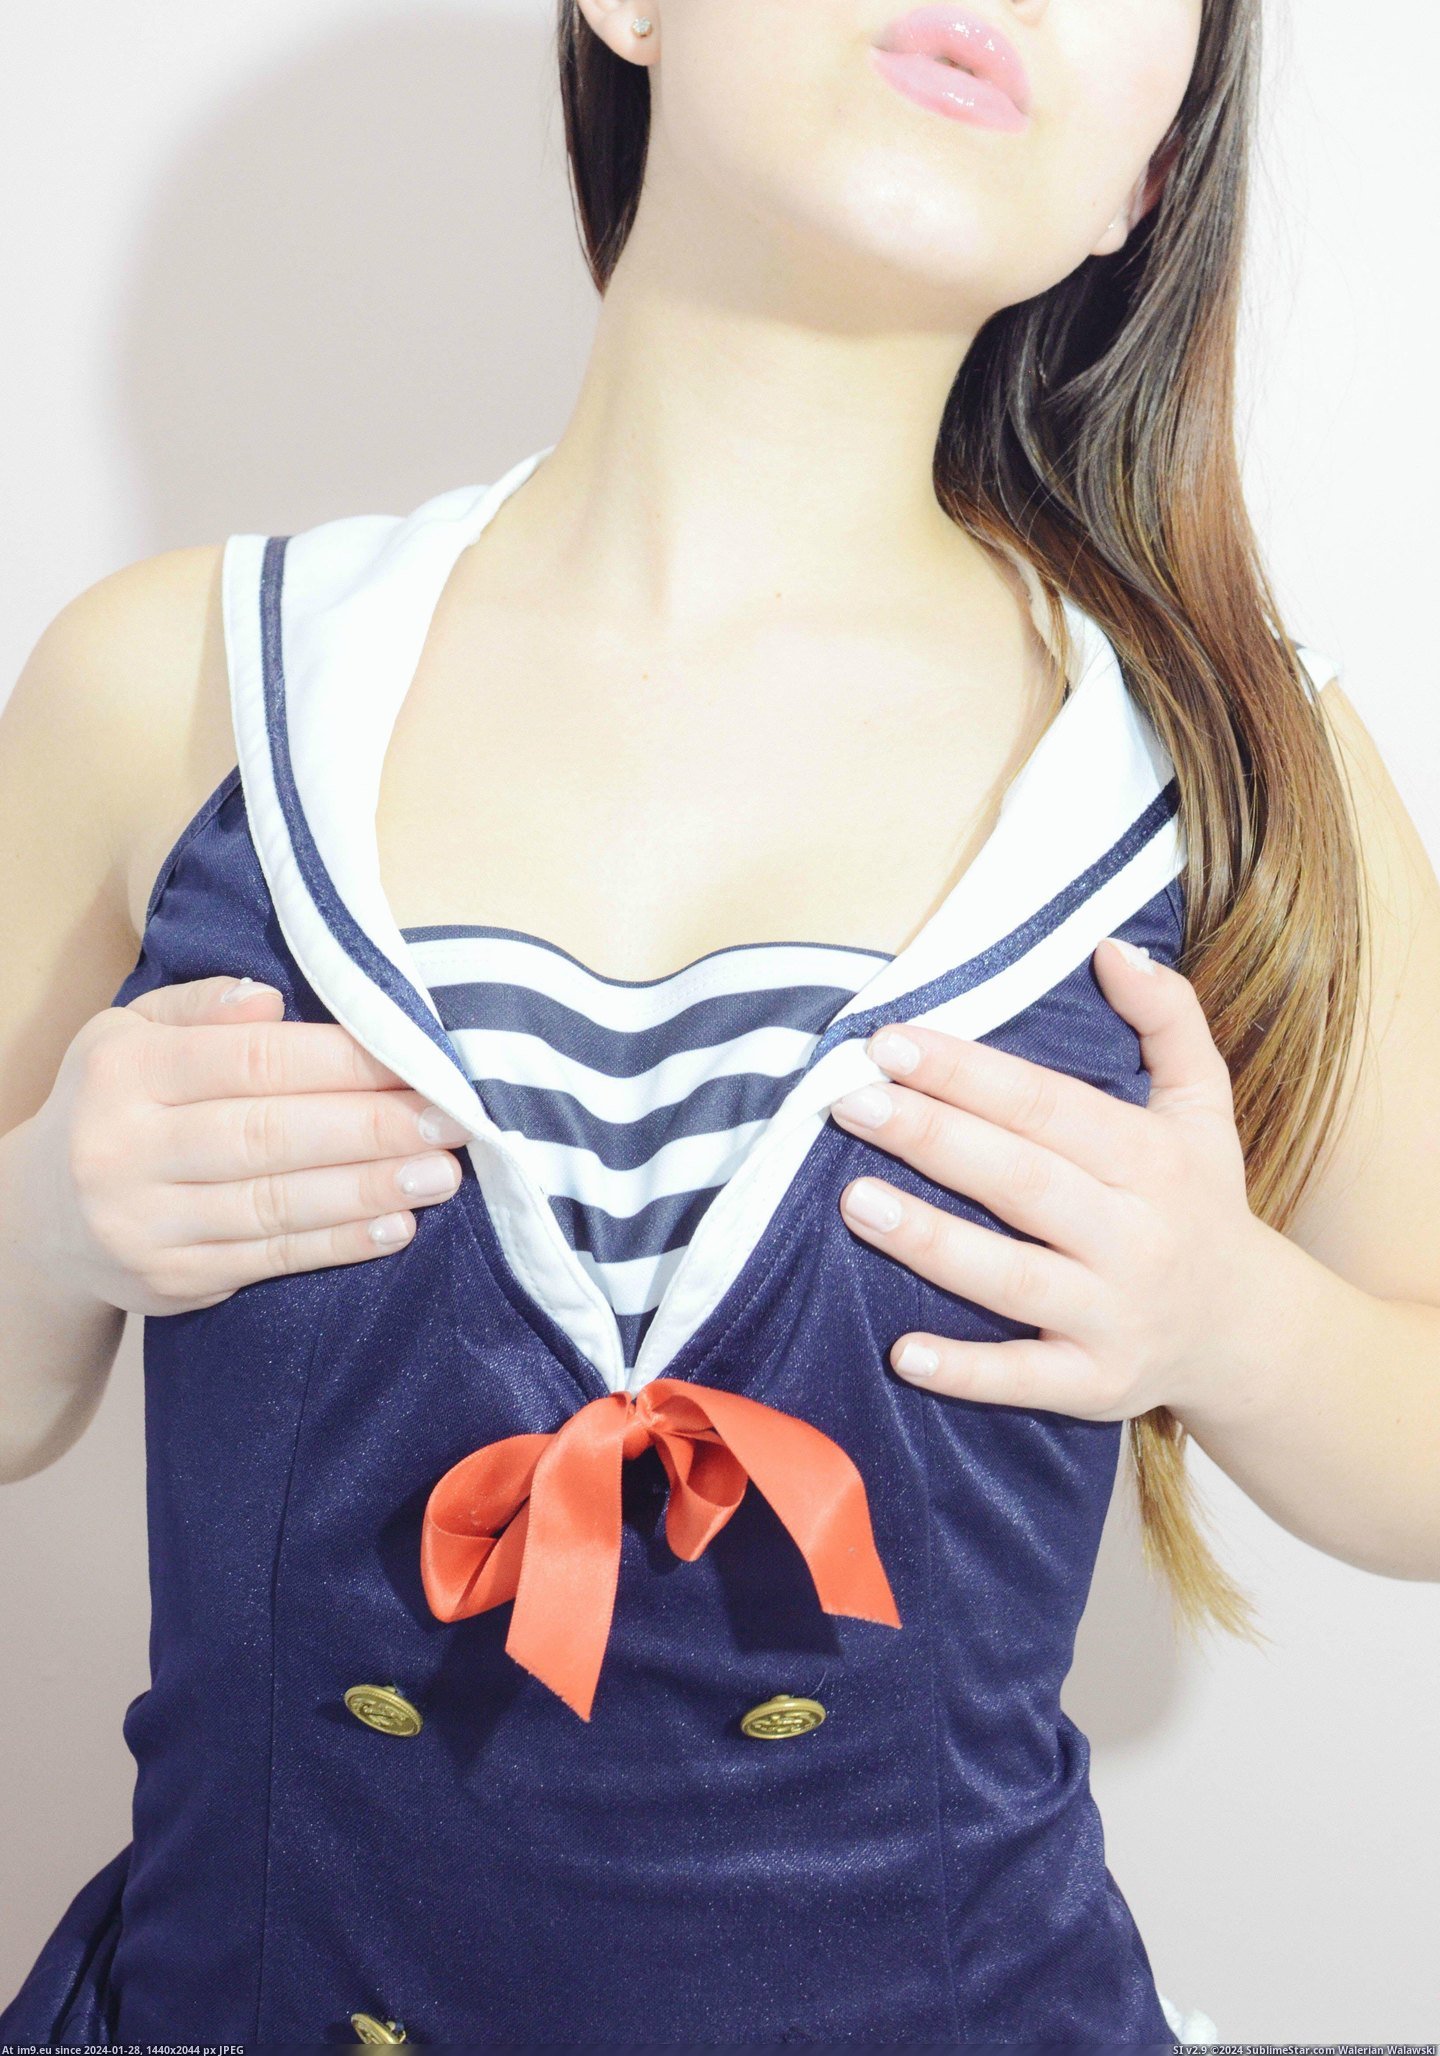 #Sexy #Album #Happy #Sailor #Striptease #Halloween #Mega #Early [Gonewild] Sexy Sailor Striptease Mega Album. Happy (early) Halloween, GW! [f] 5 Pic. (Bild von album My r/GONEWILD favs))